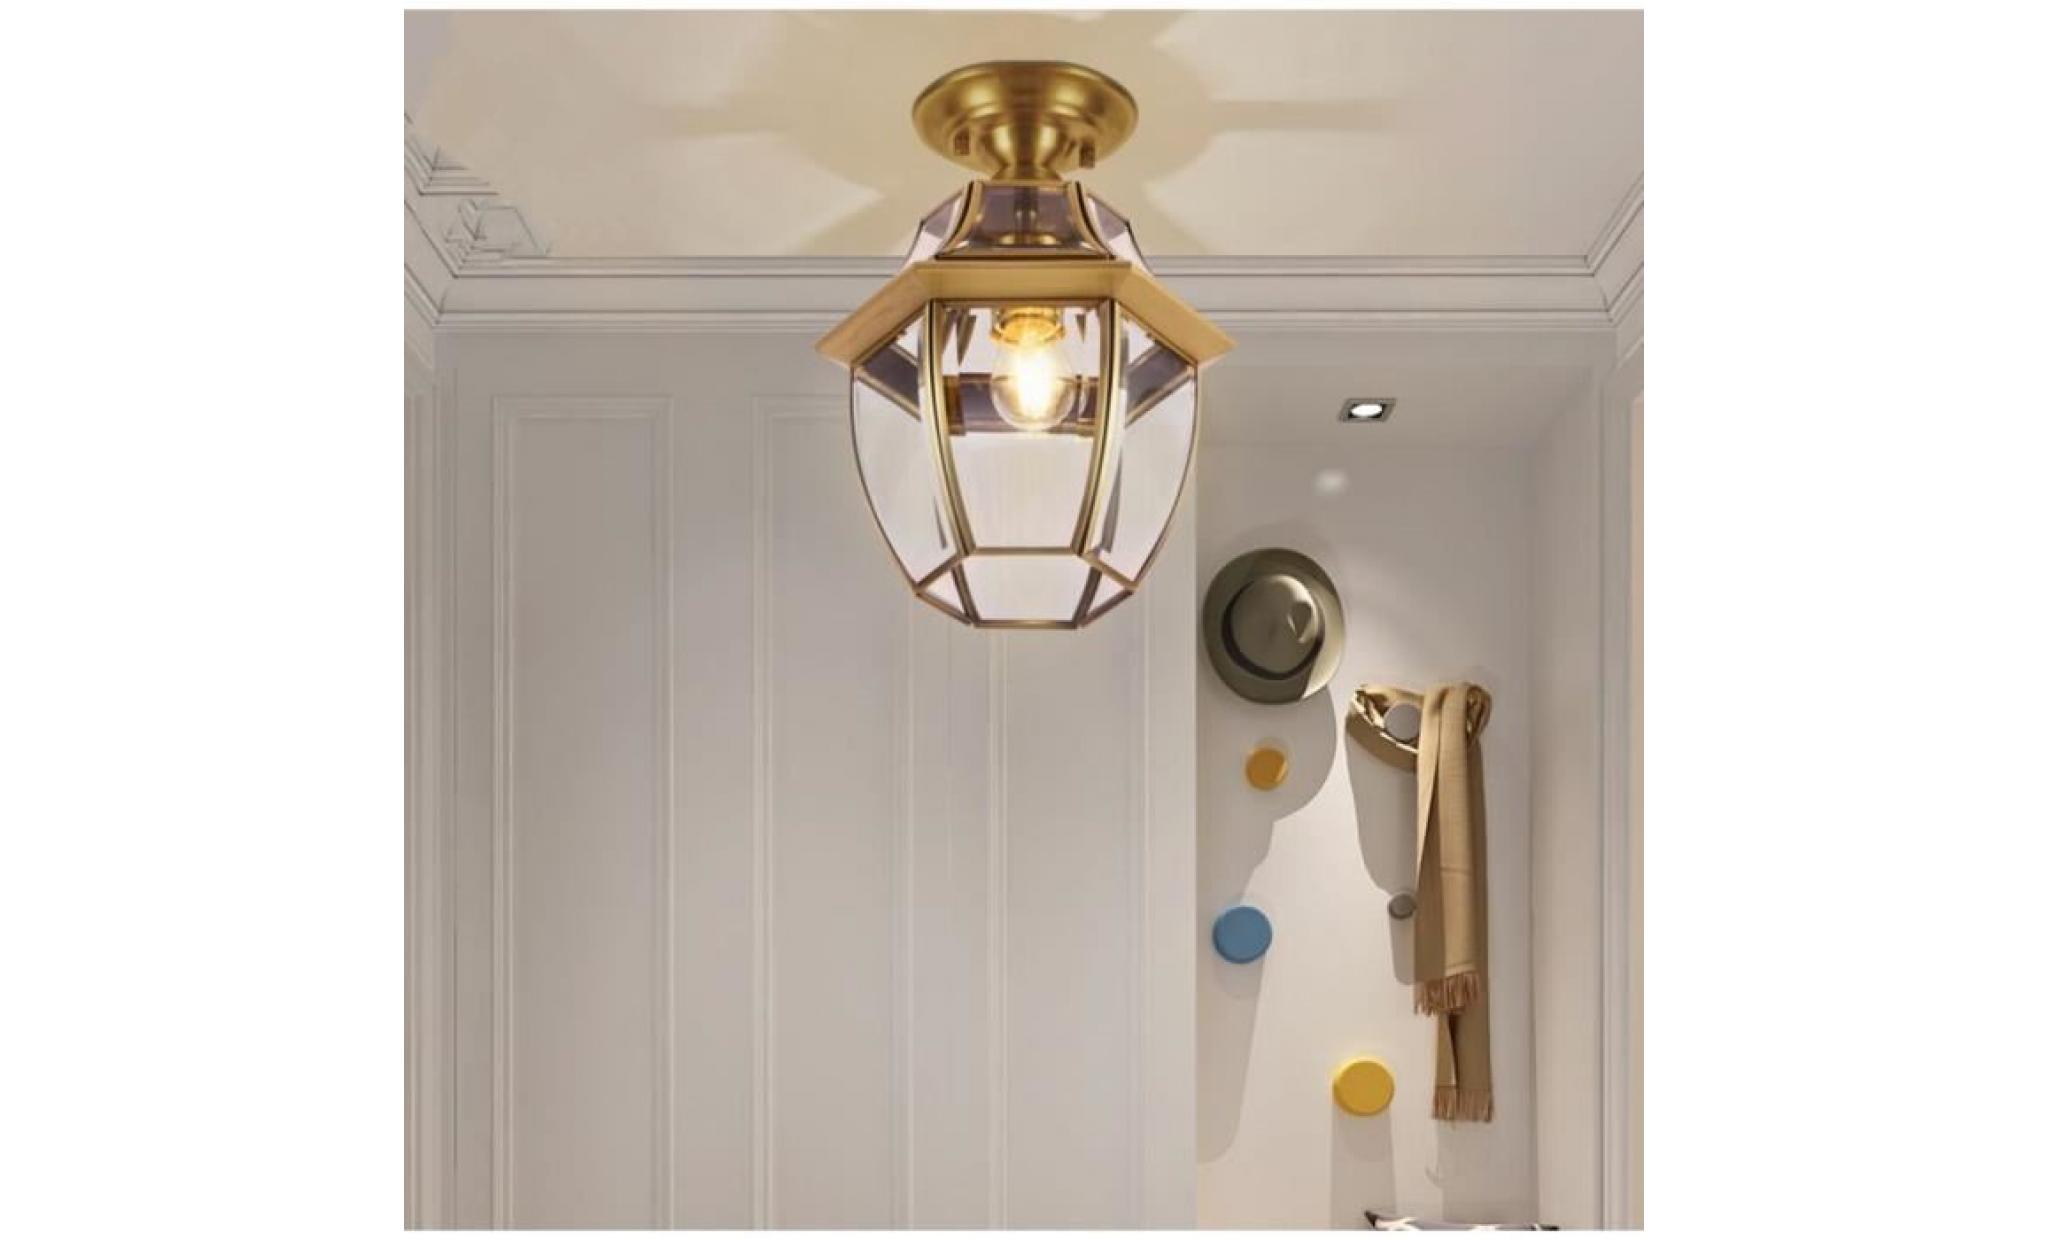 européen style lampe en cuivre nouveau simple créatif couloir aisle porche cage d'escalier plafond lamp l'éclairage applique murale pas cher